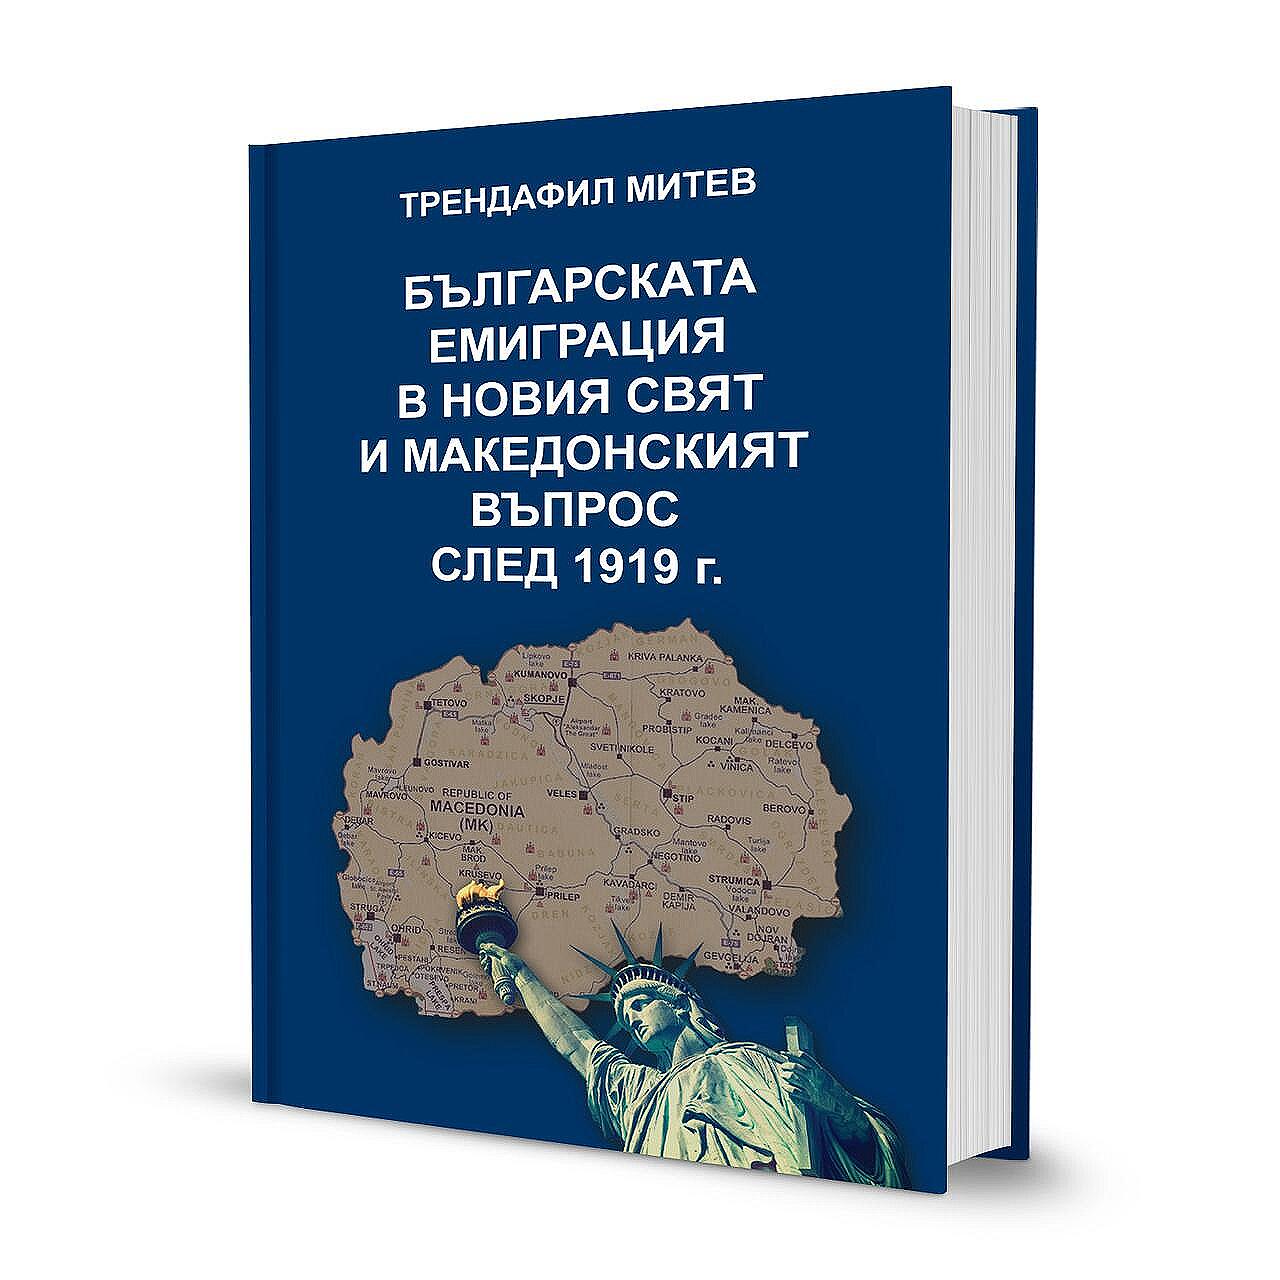 Българската емиграция в Новия свят и македонският въпрос след 1919 г.